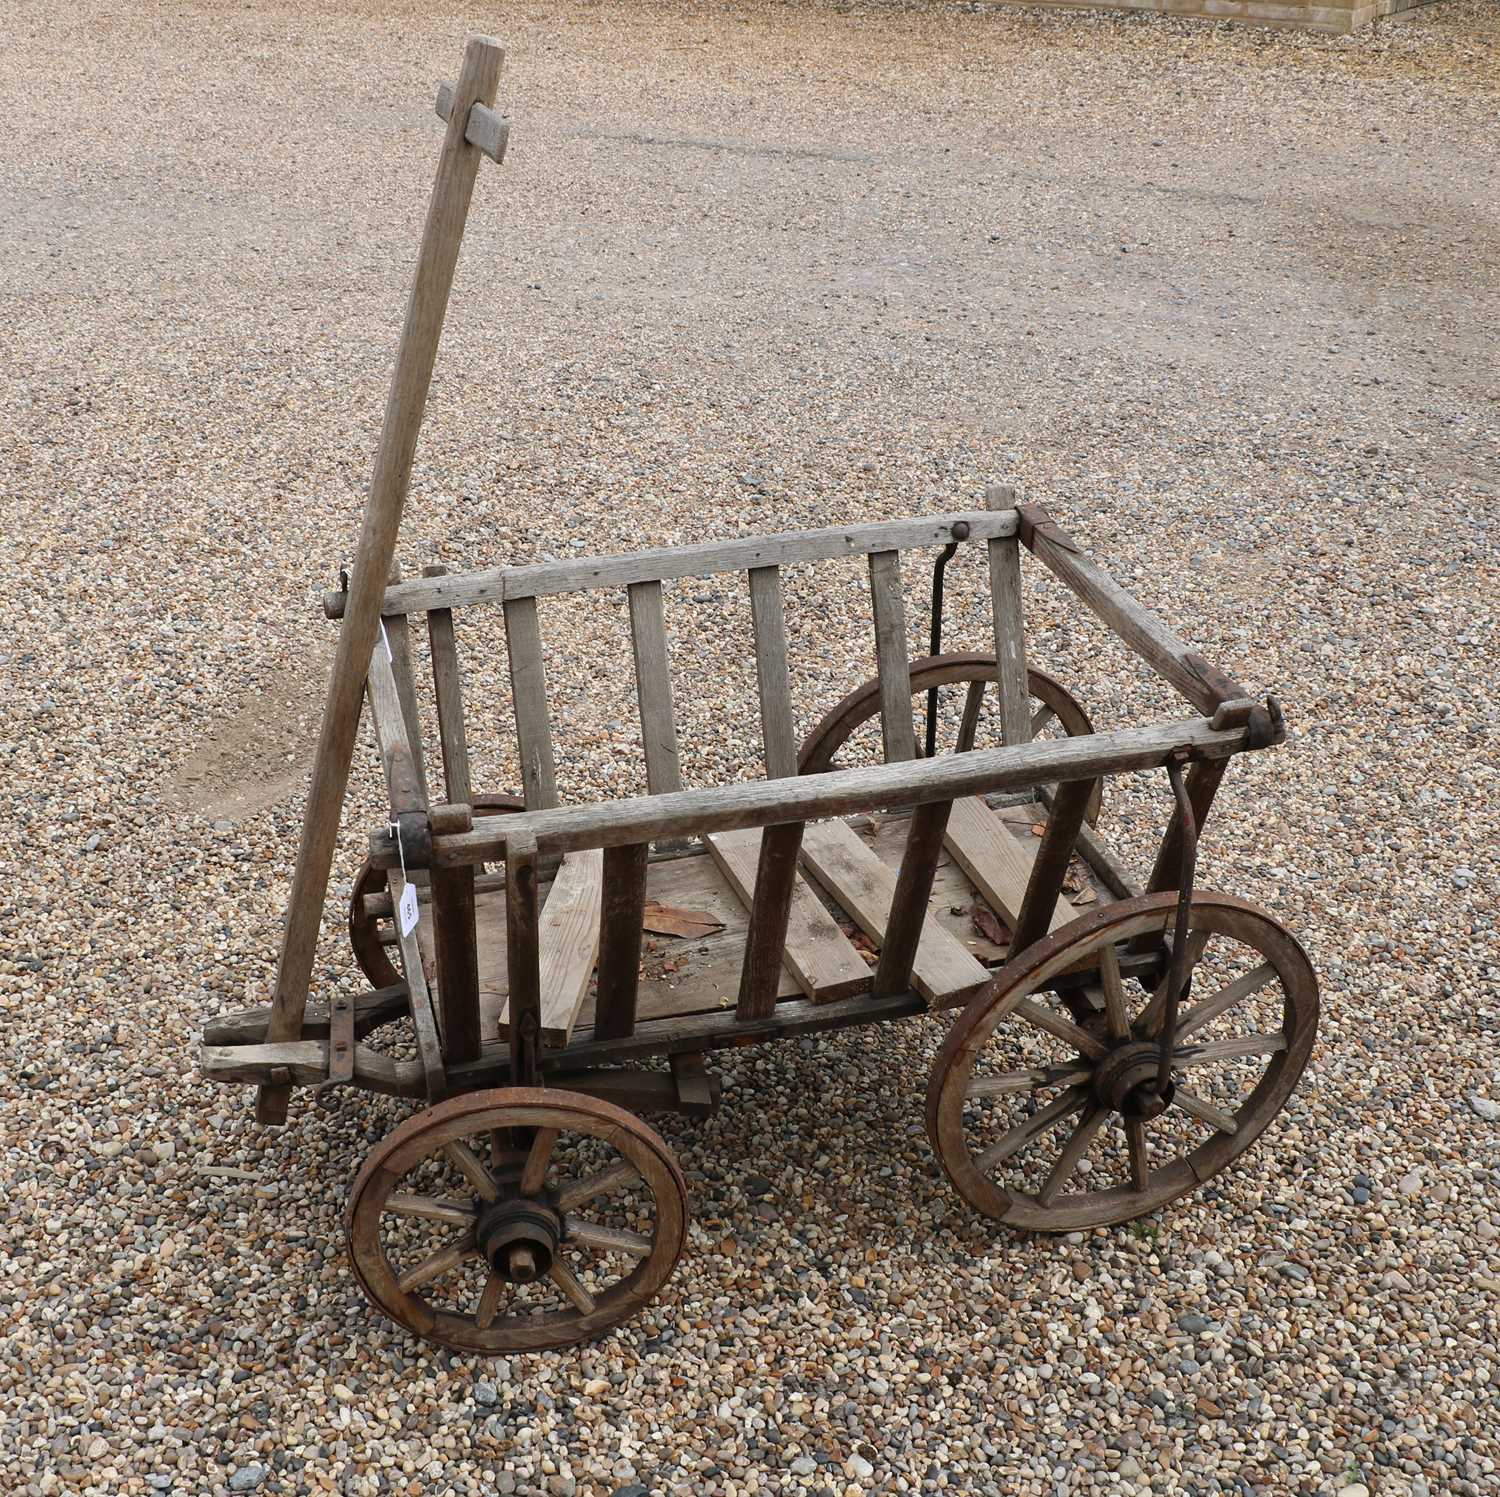 Lot 465 - A wooden dog cart